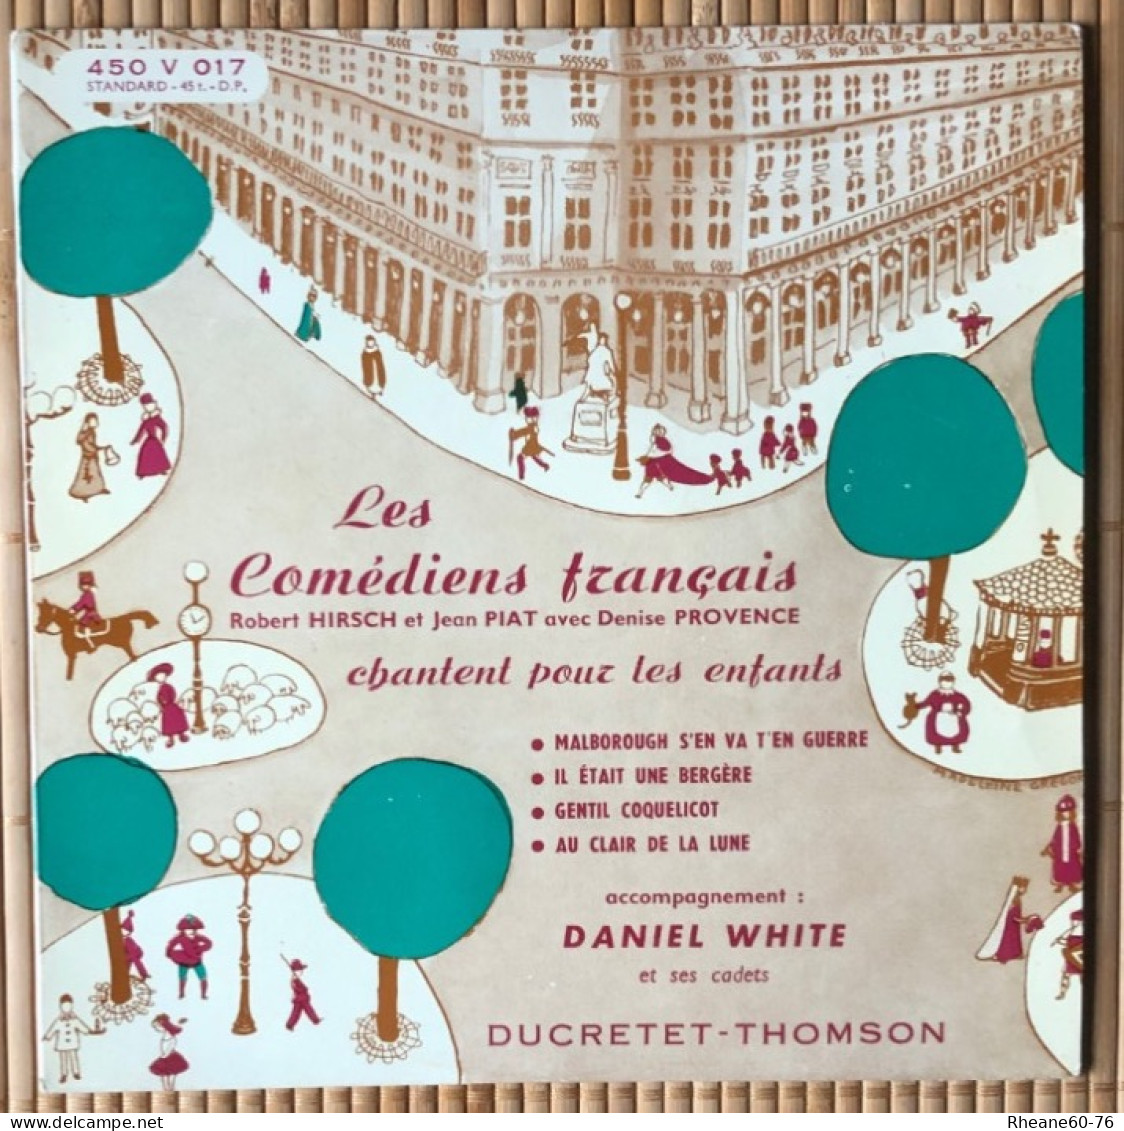 Ducretet-Thomson 45T DP (EP) - 450 V 017 - Les Comédiens Français Chantent Pour Les Enfants - Pochette Couleur « beige » - Formats Spéciaux